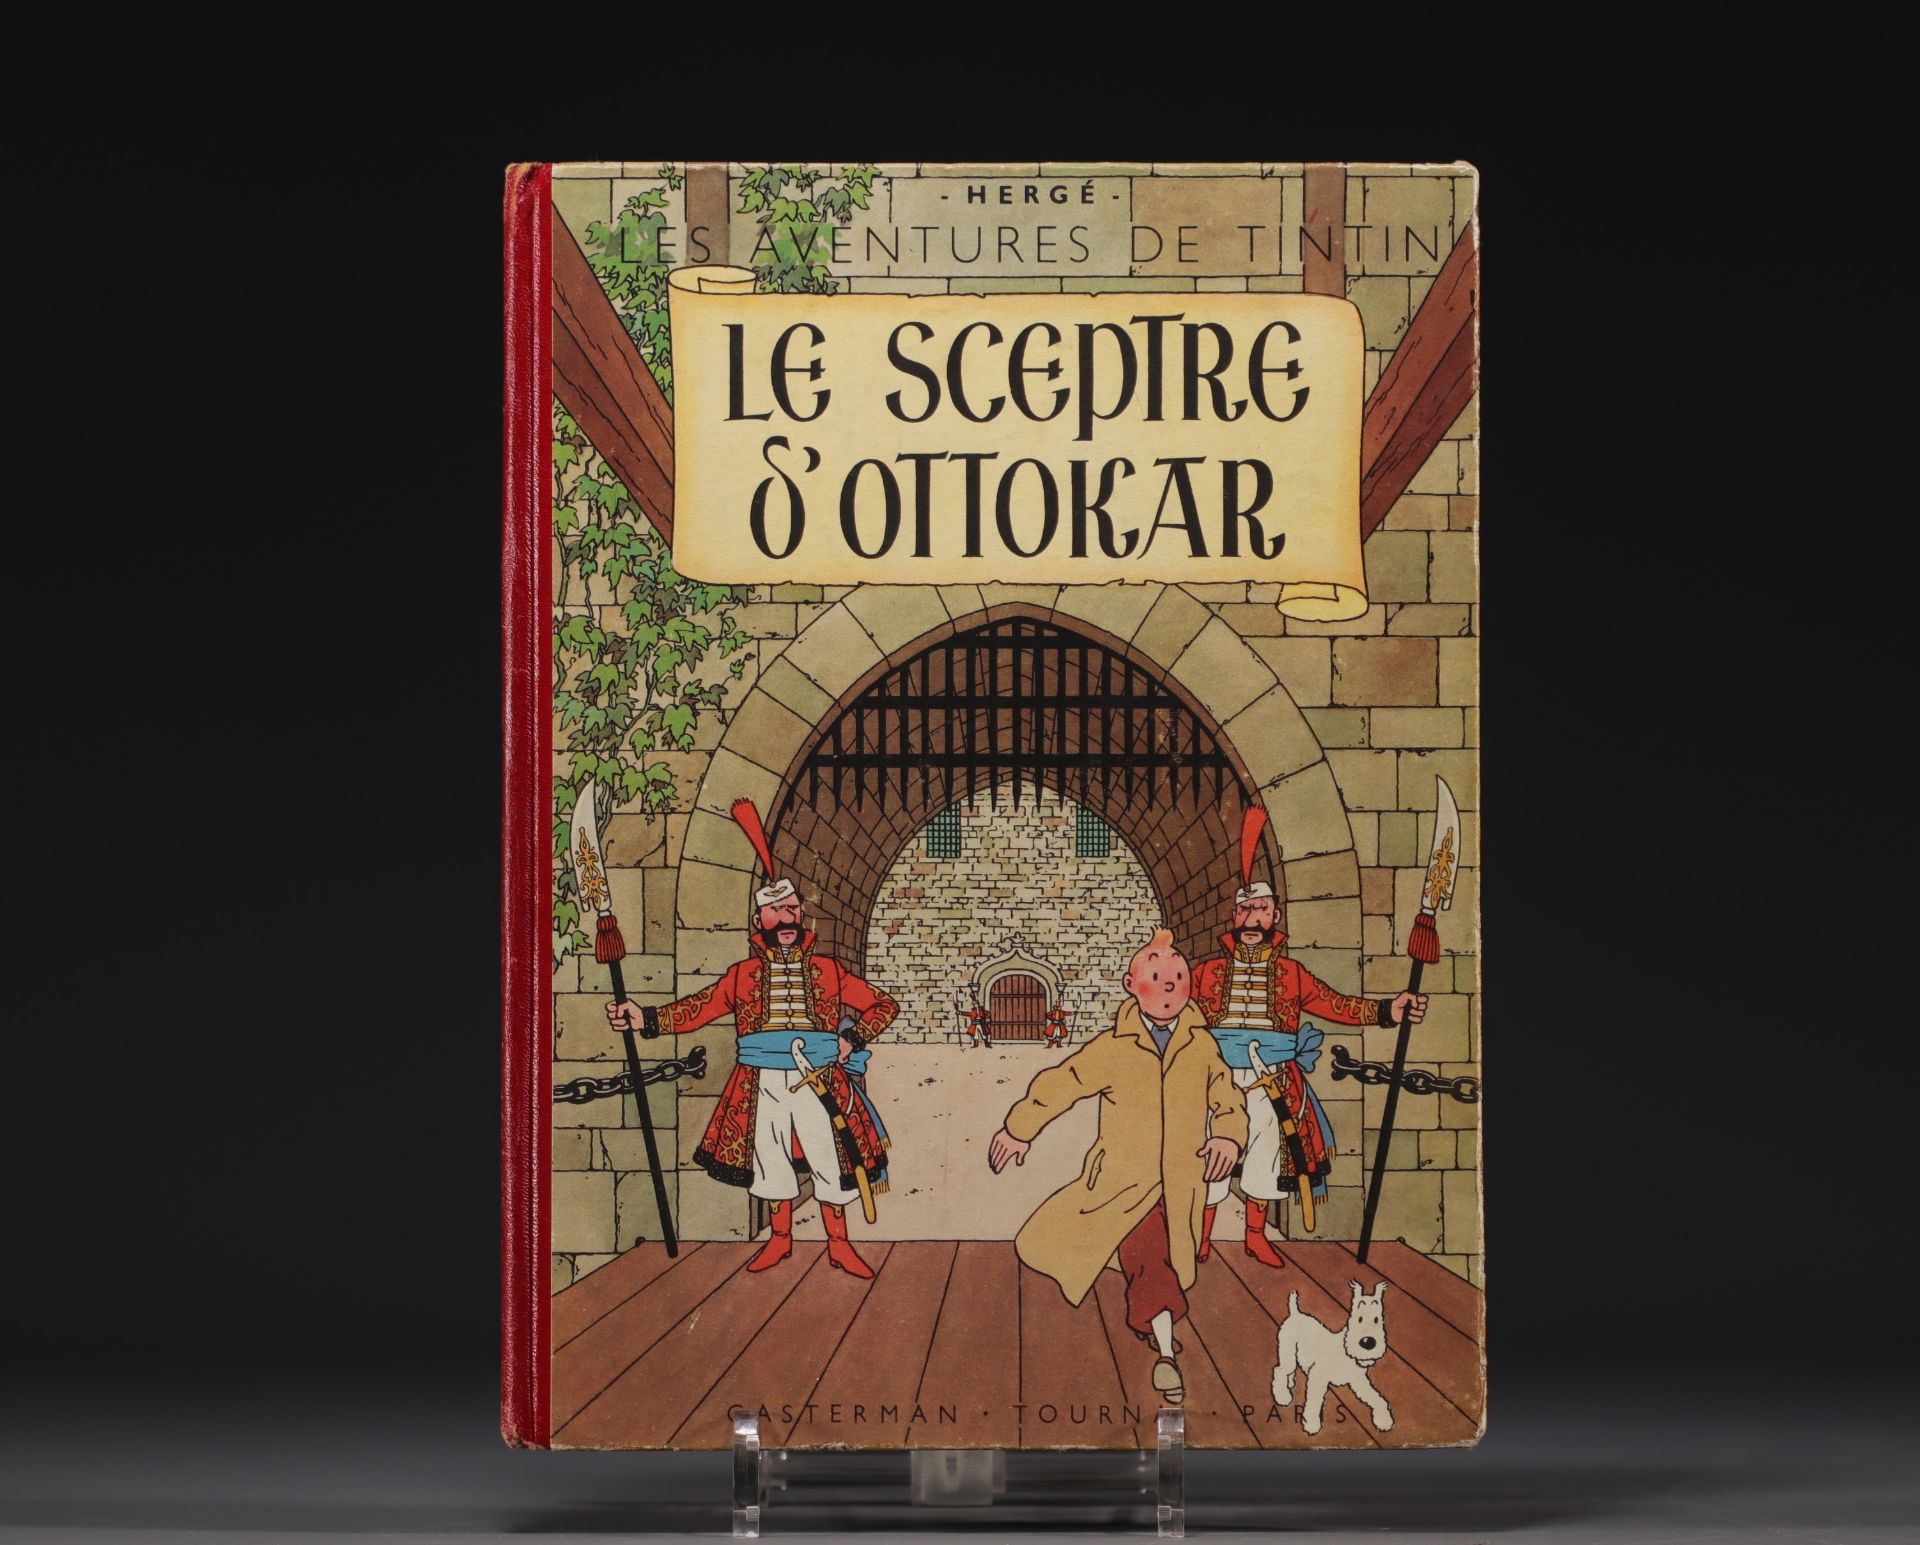 Tintin - "Ottokar's sceptre" album, 1947 edition.